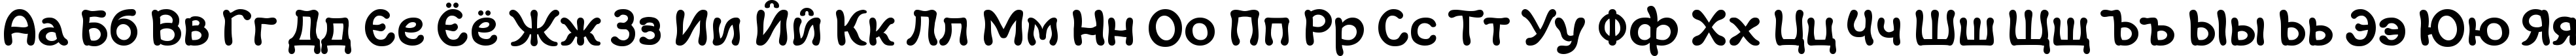 Пример написания русского алфавита шрифтом Margot Fette